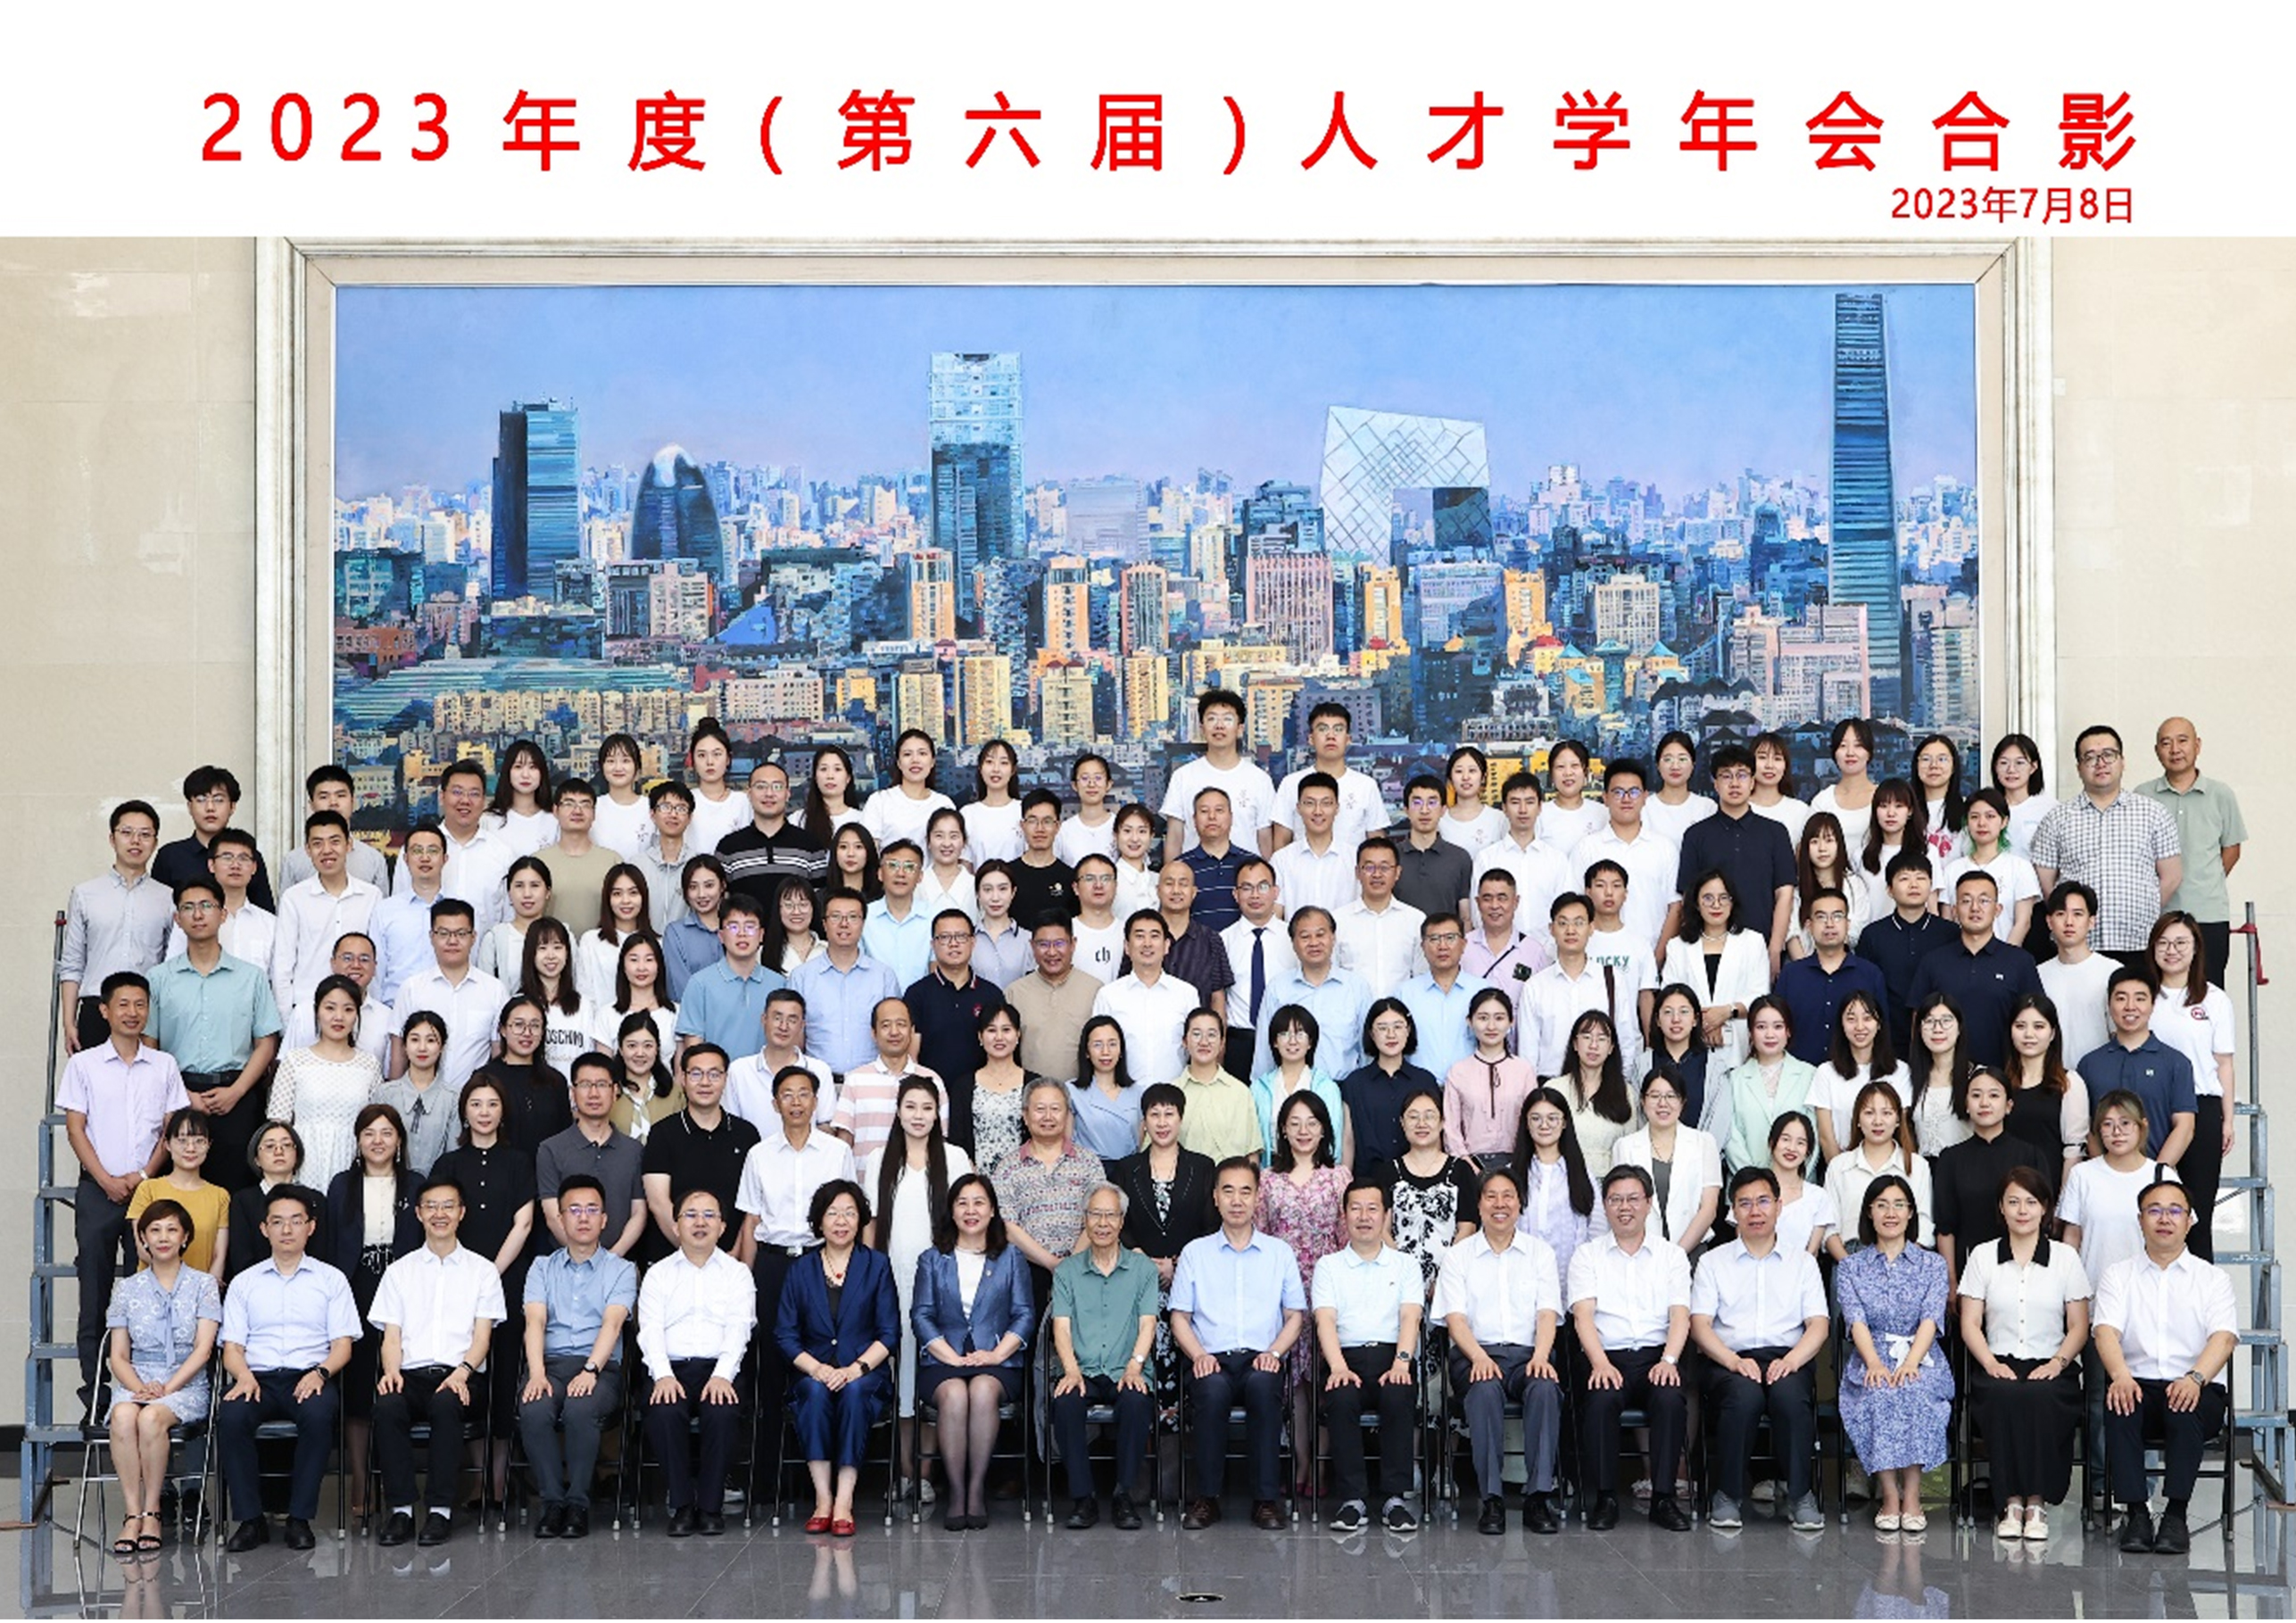 策划专业委员会副主席兼秘书长孙久杰应邀出席2023年度第六届人才学年会